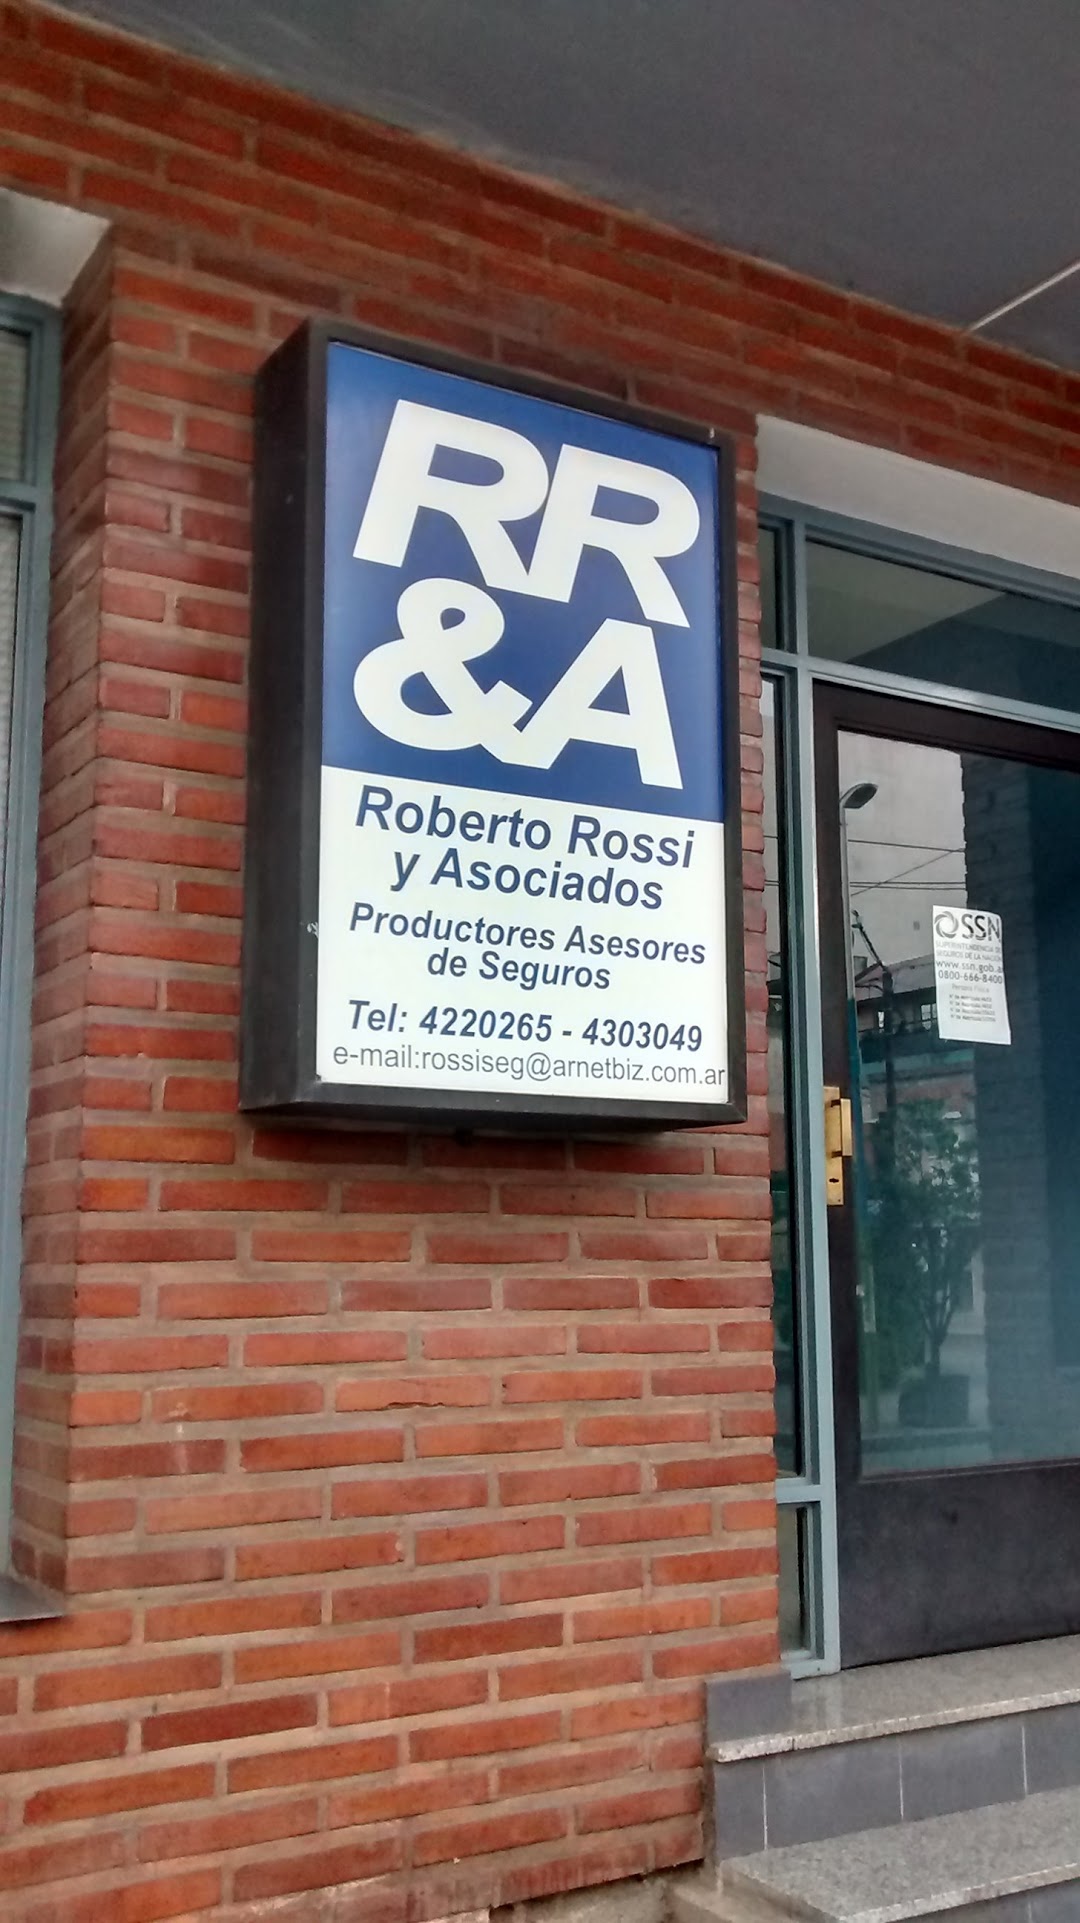 RR&A Roberto Rossi & Asociados